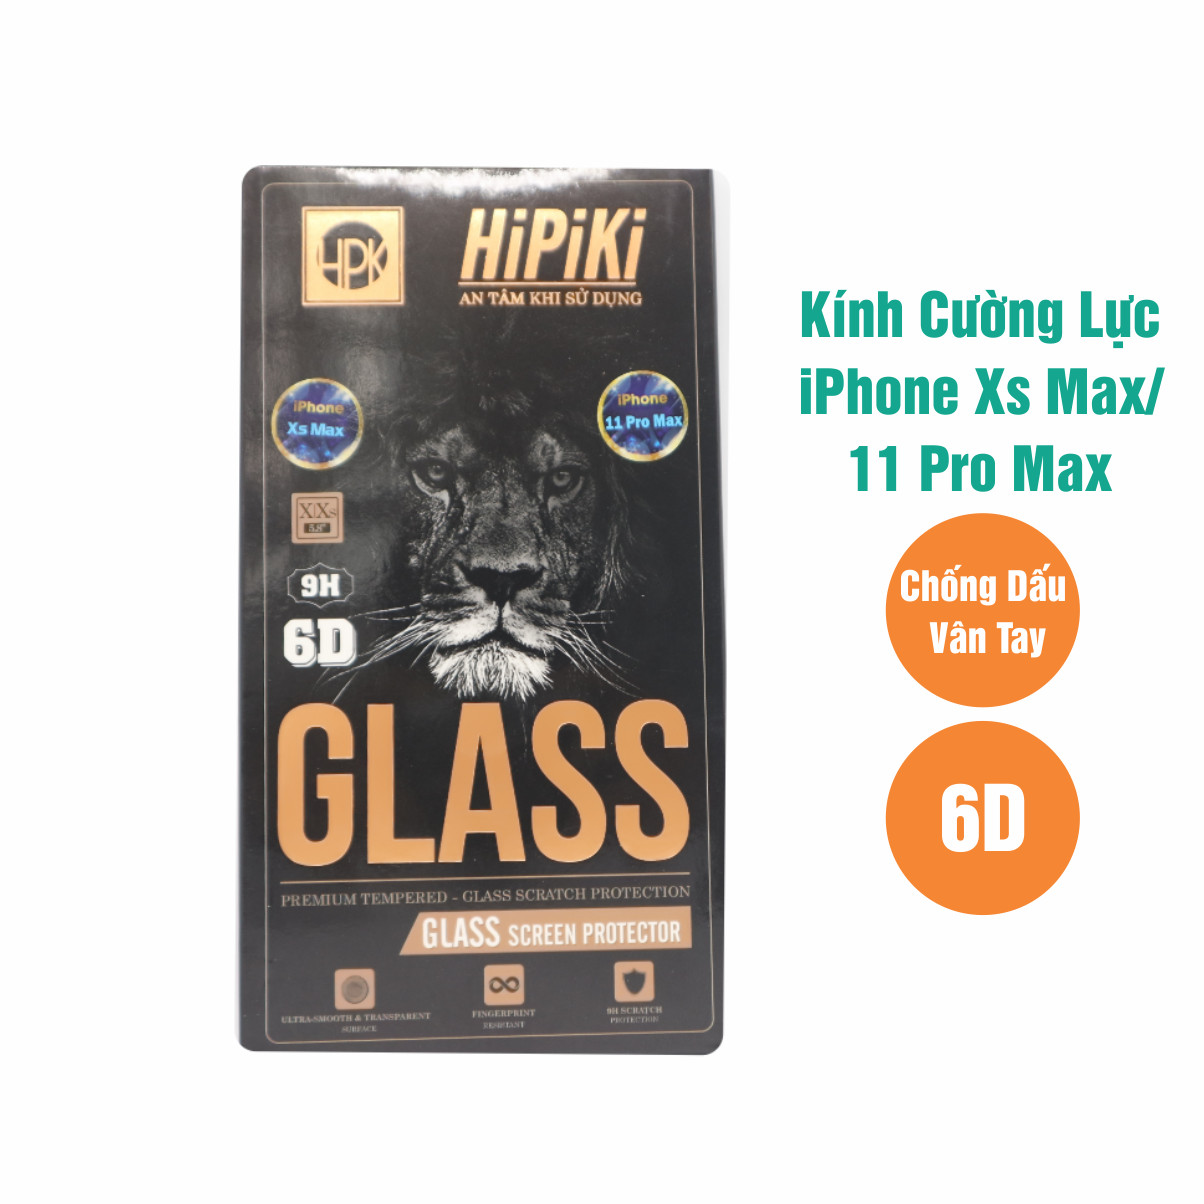 Miếng Dán Màn Hình Kính Cường Lực Cho iPhone XS MAX, iPhone 11 Pro Max HIPIKI 6D (Full Black) - Hàng Chính Hãng